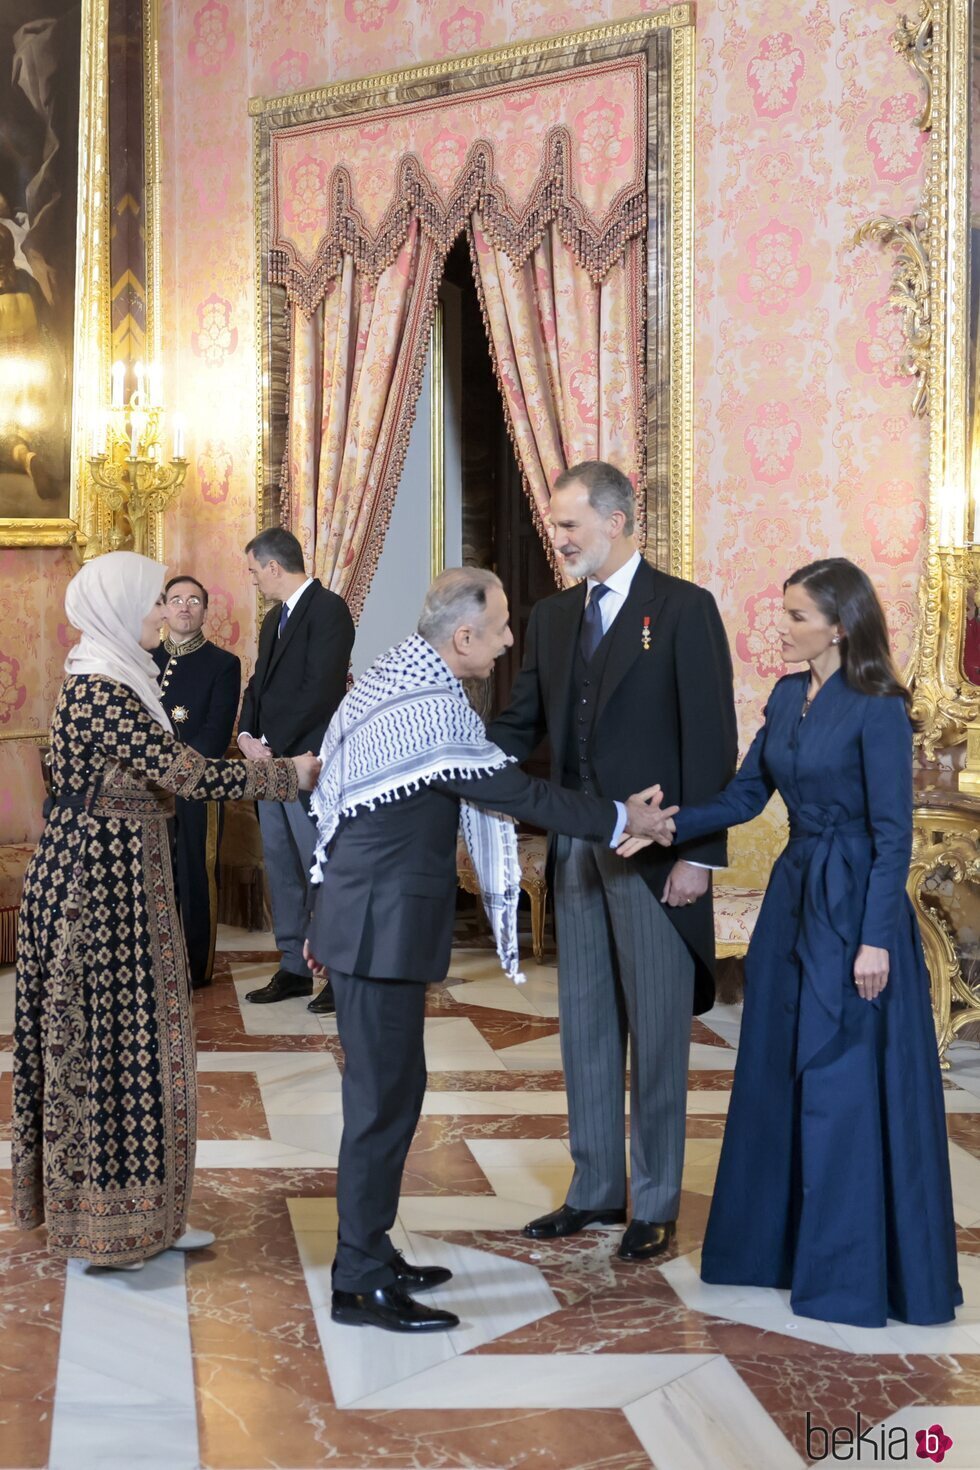 Los Reyes Felipe y Letizia saludan al Embajador Jefe de la Misión Diplomática de Palestina en la recepción al Cuerpo Diplomático